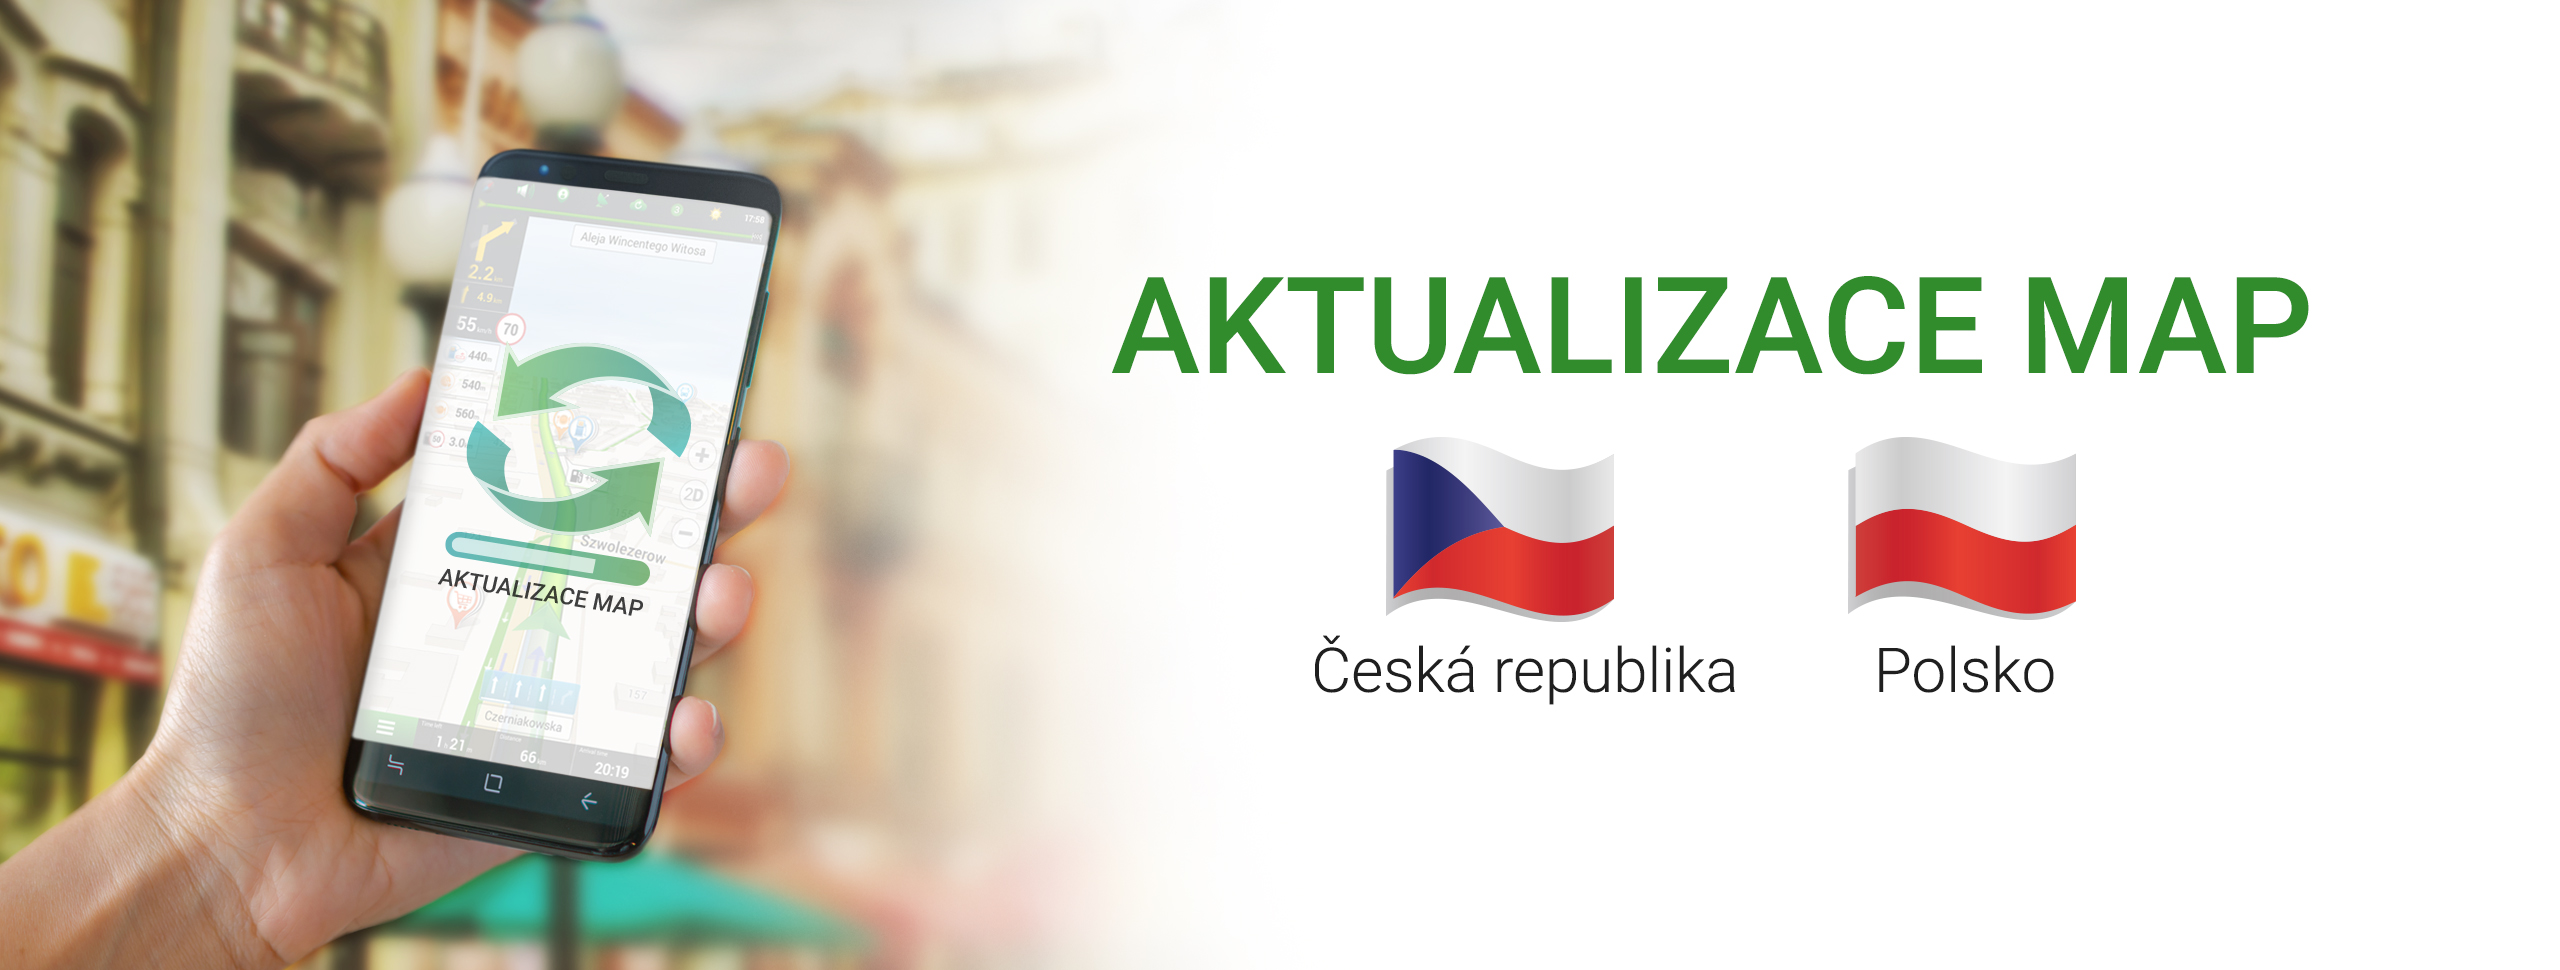 NAVITEL® vydal aktualizaci map České republiky a Polska